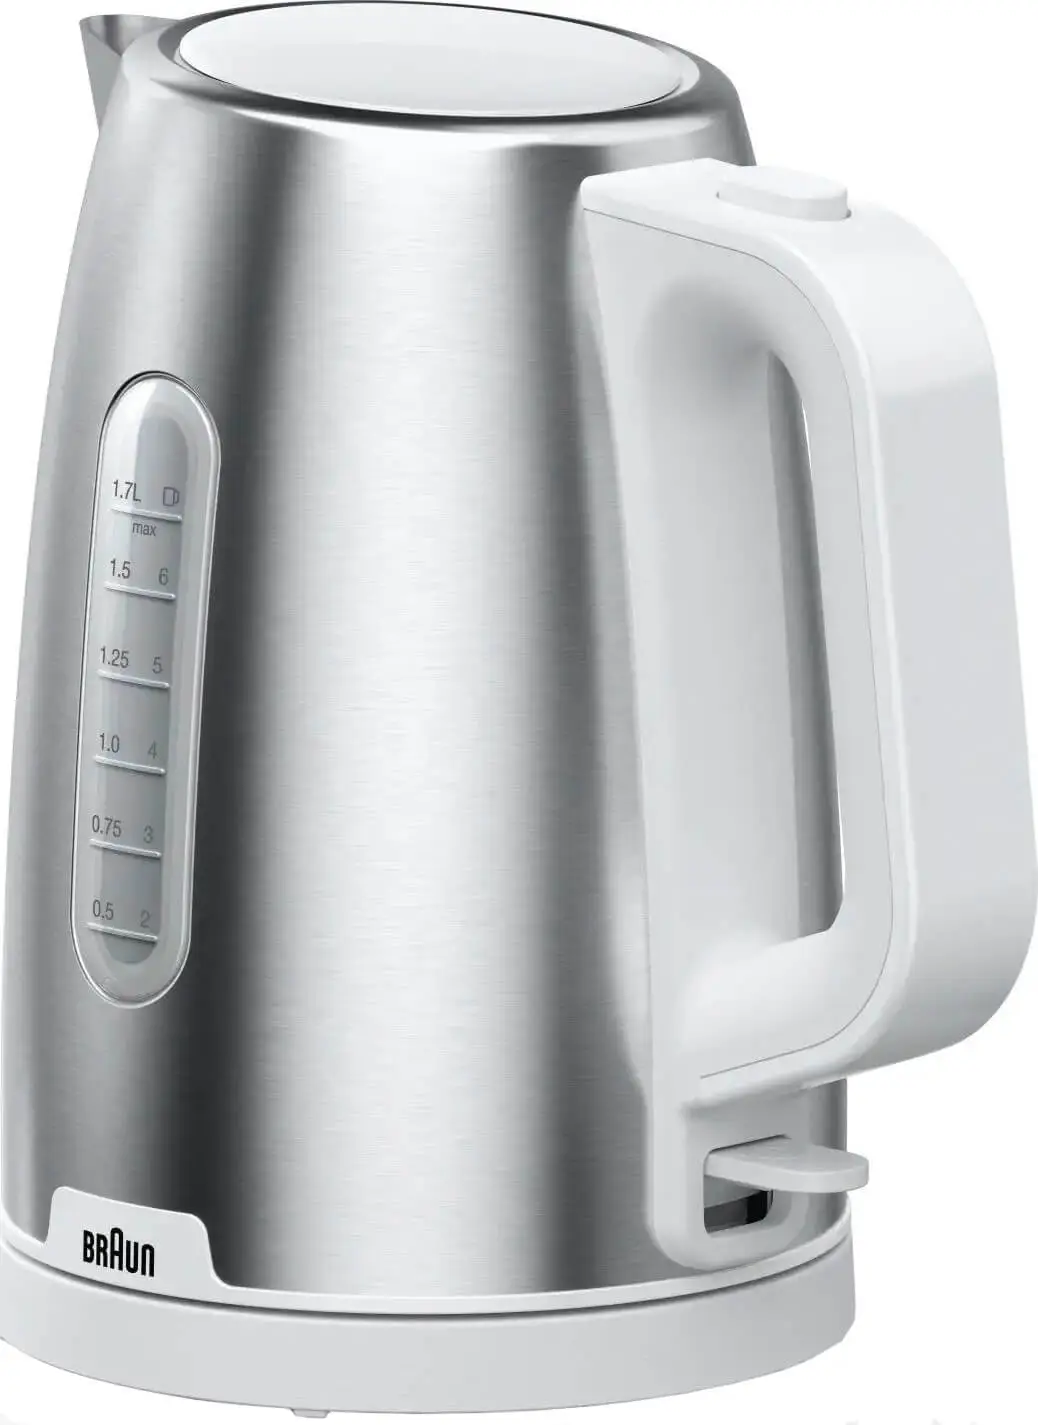 Чайник электрический Braun WK1500WH 1.7 л белый, серебристый фен braun hd 710 2 200 вт серебристый